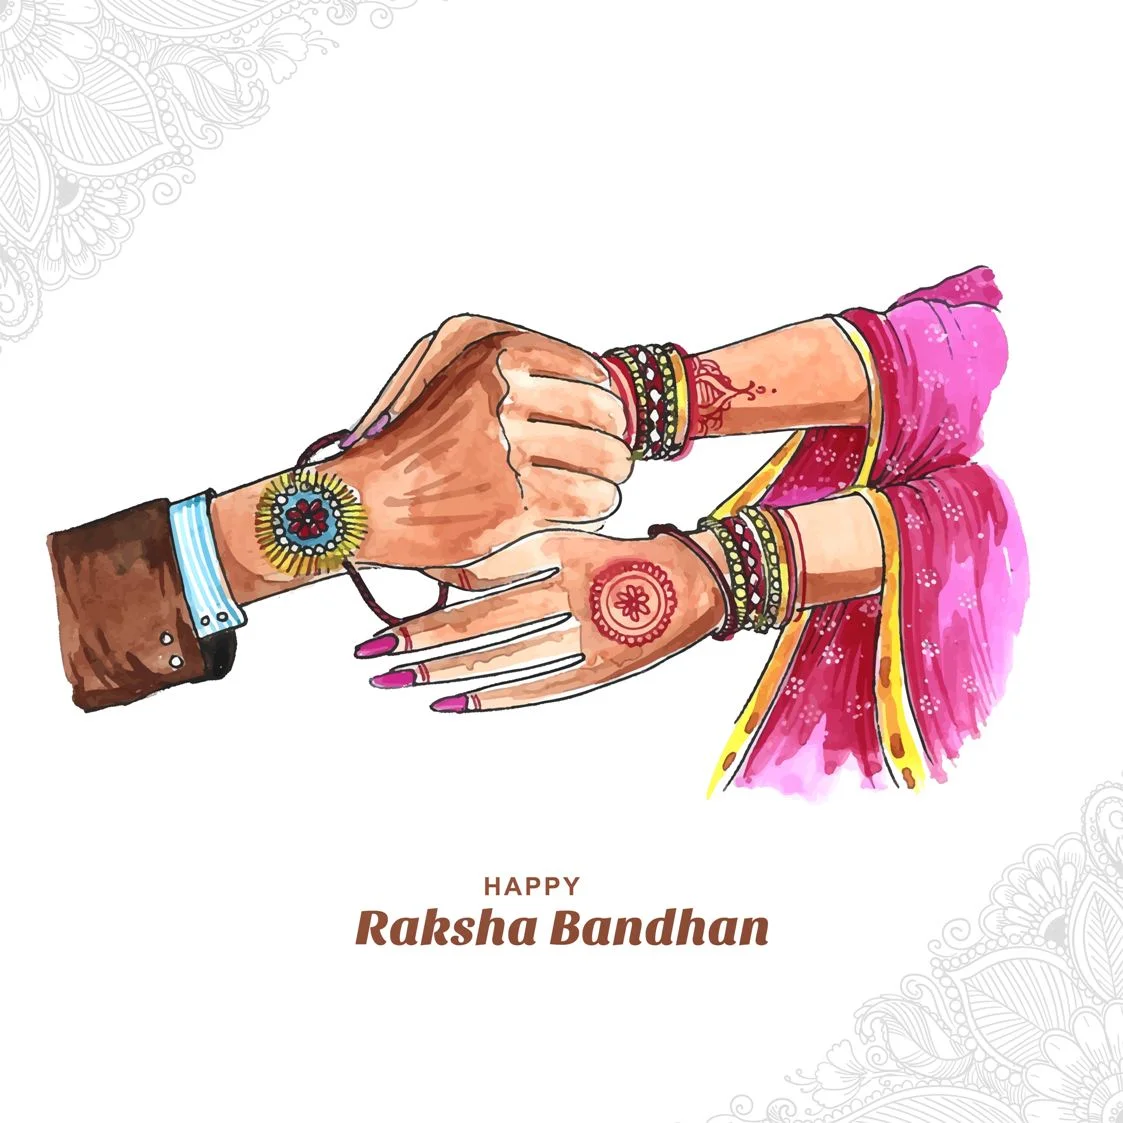 100+] Happy Raksha Bandhan Wallpapers | Wallpapers.com